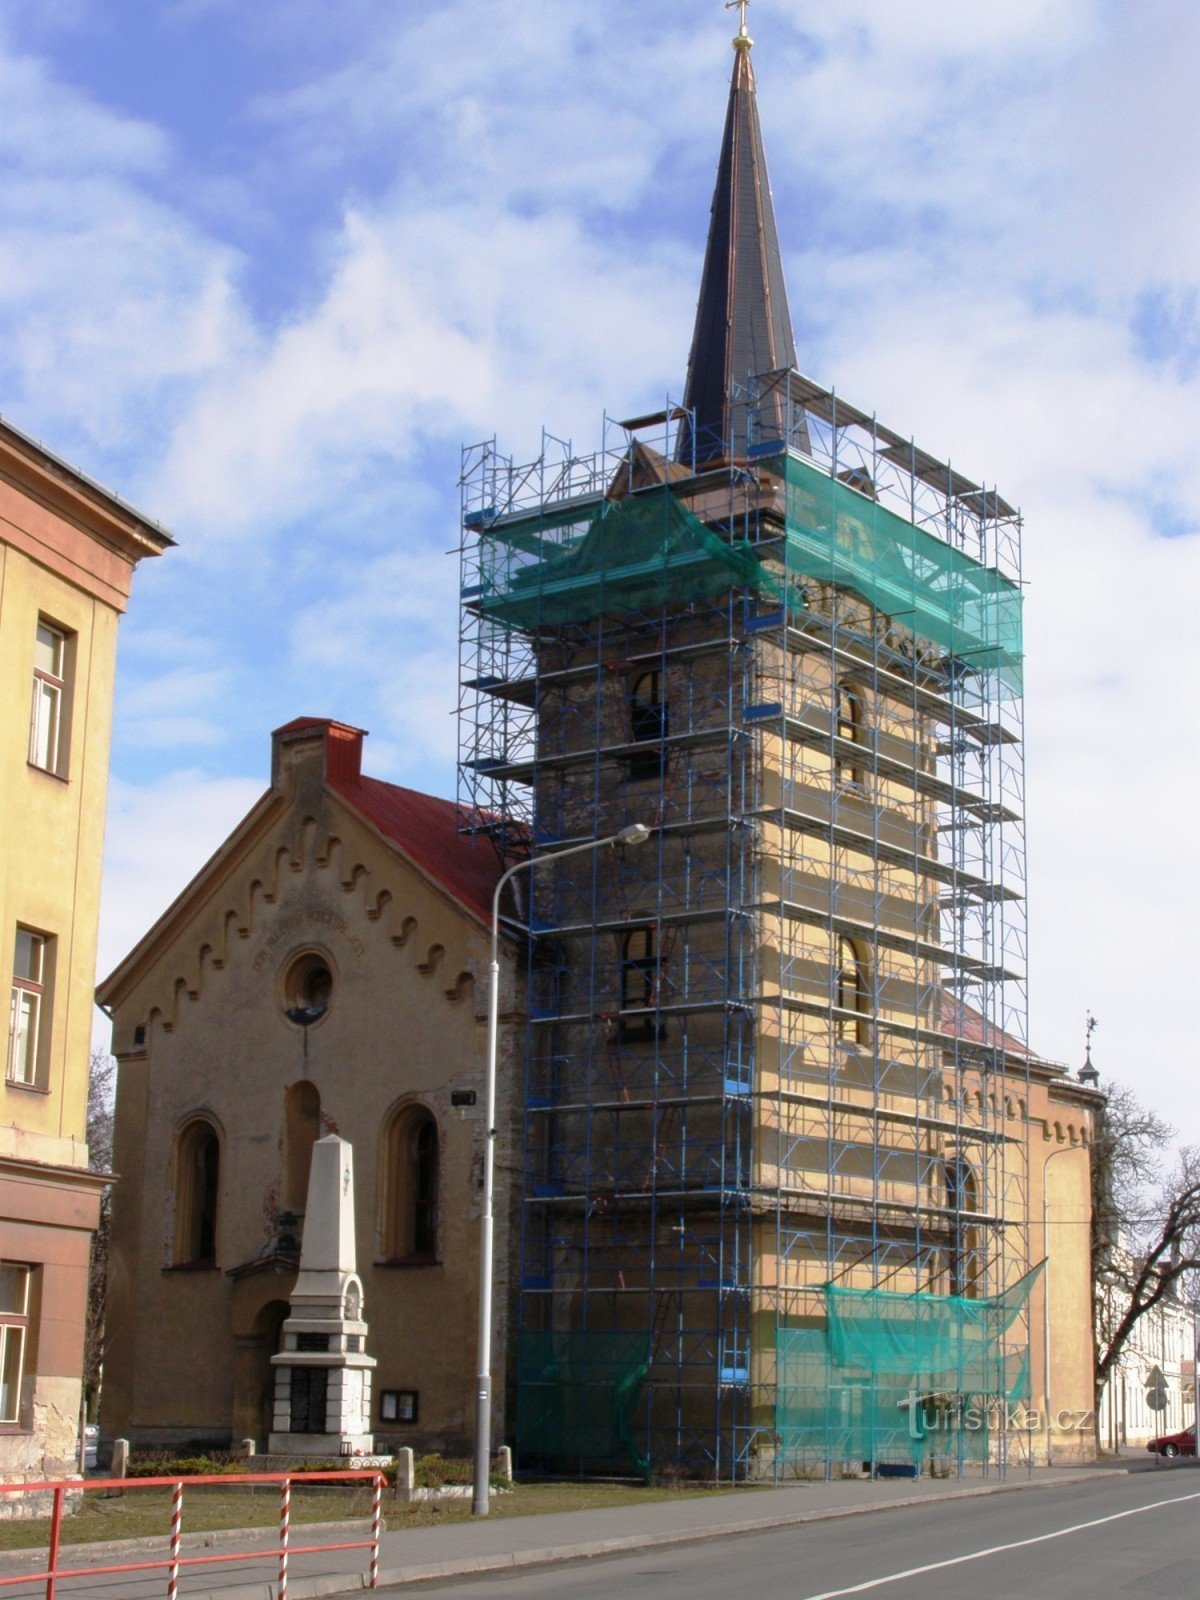 Stad Králové - Kerk van St. Markten